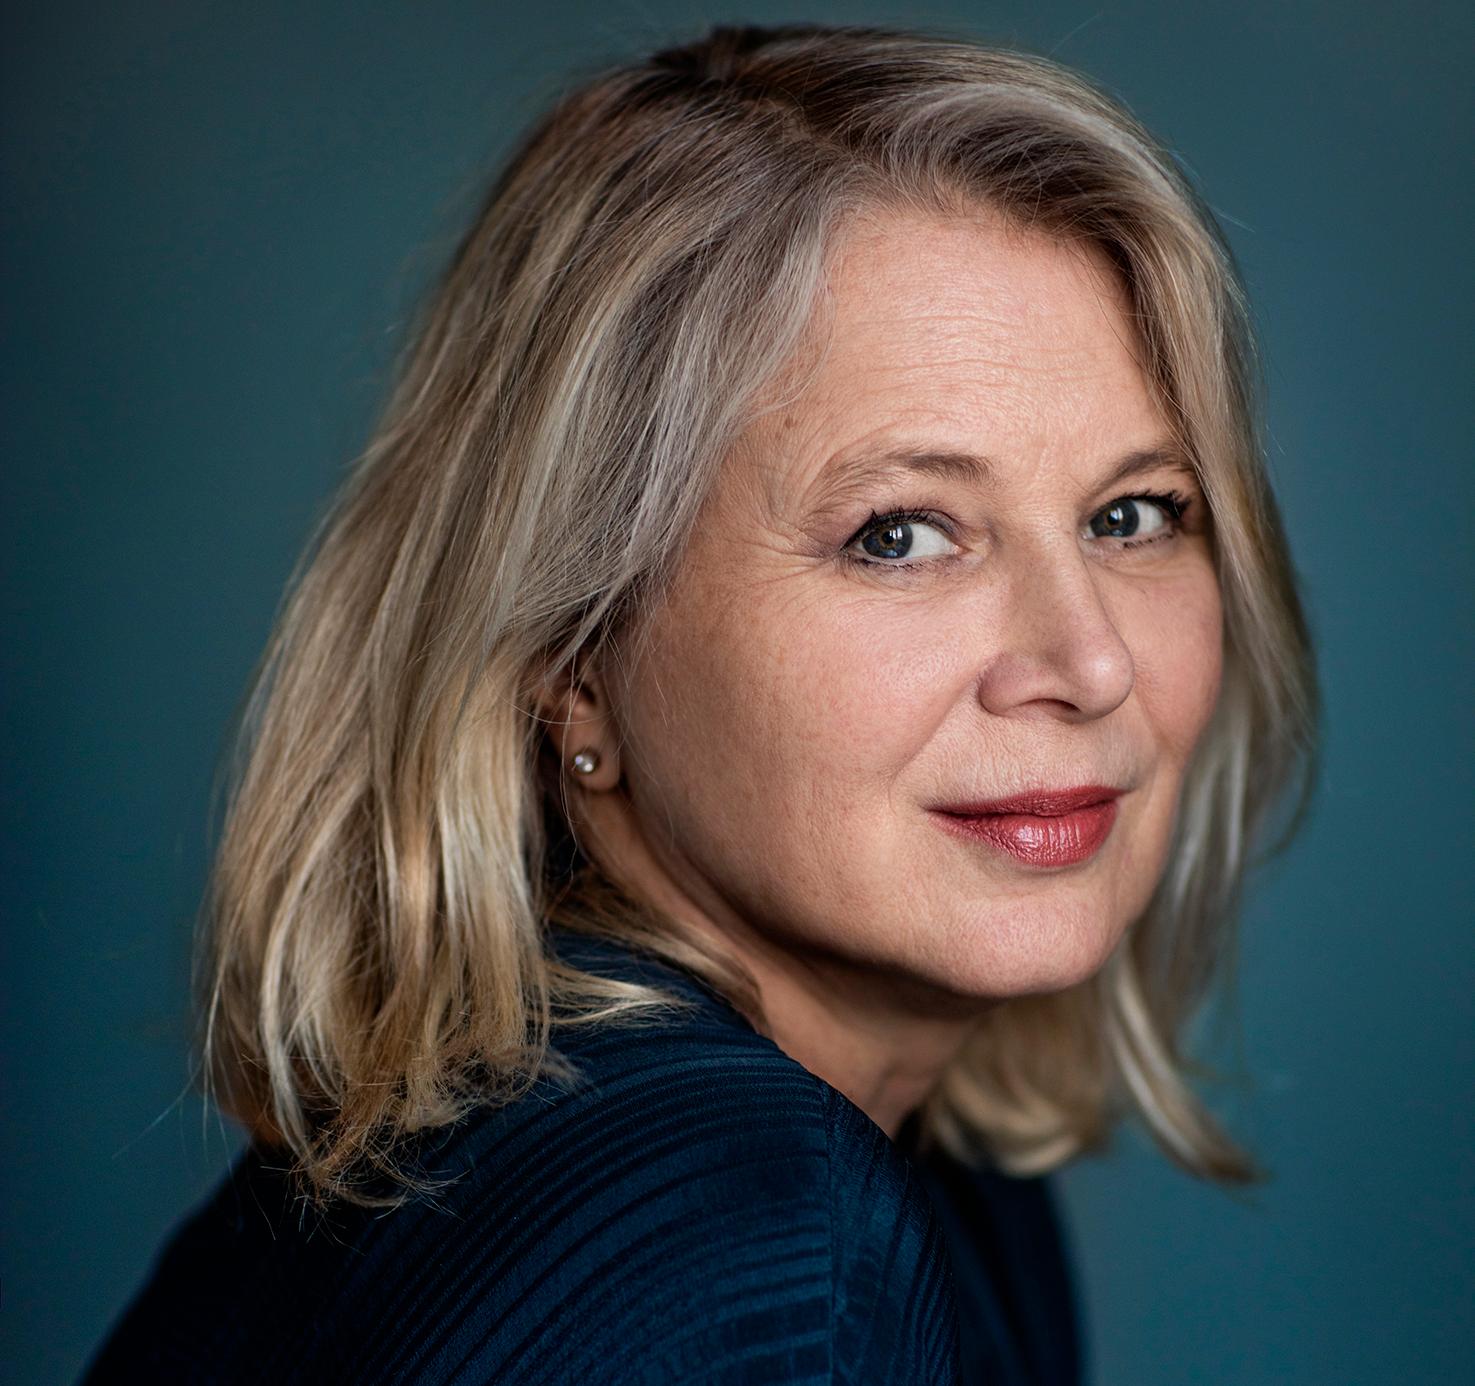 Helena von Zweigbergk, född 1959, är författare, journalist och programledare. 